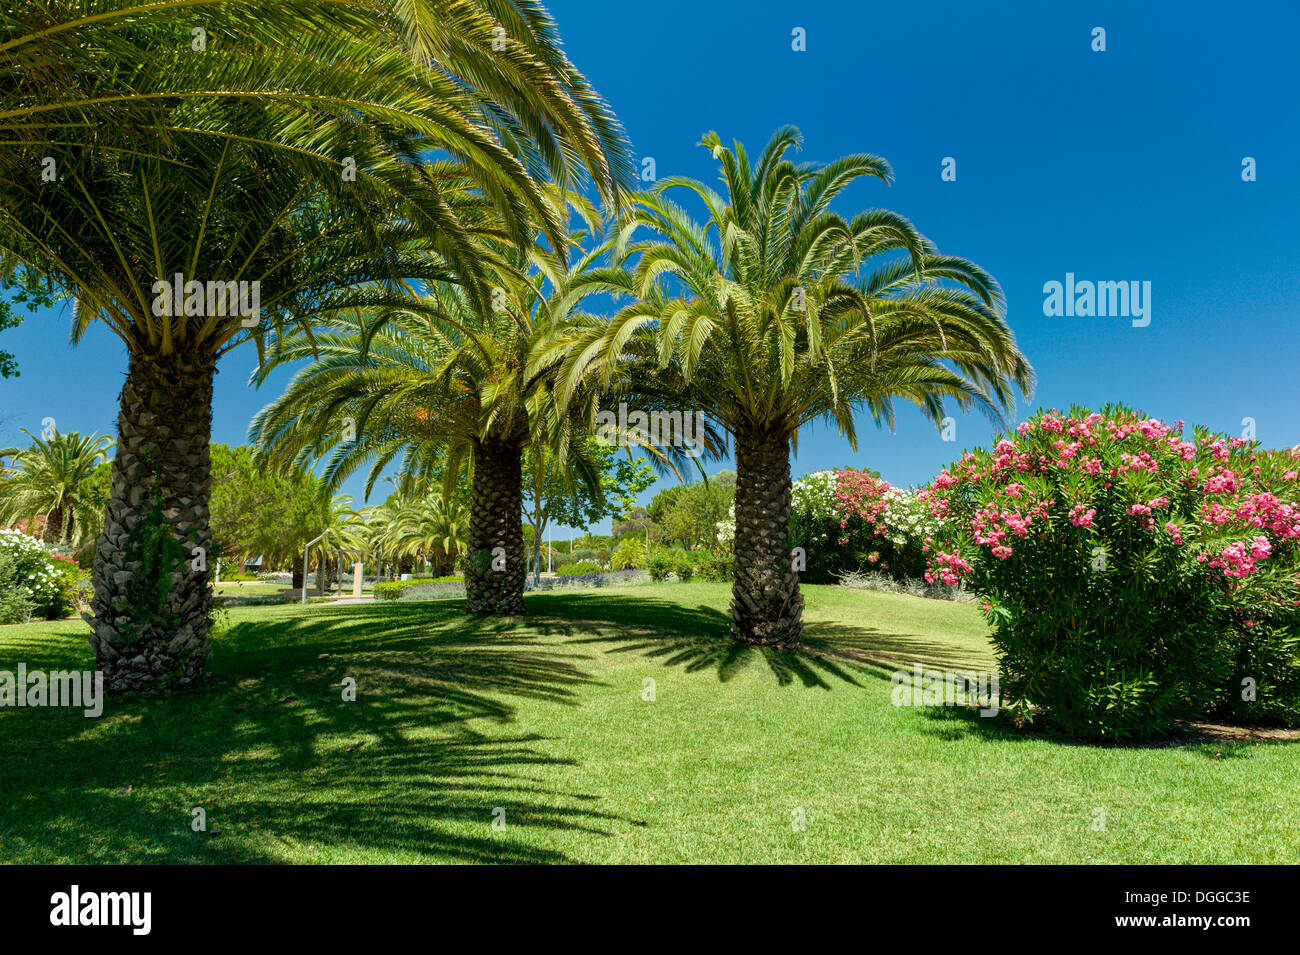 Portugal, the Algarve, Vilamoura, gardens Stock Photo